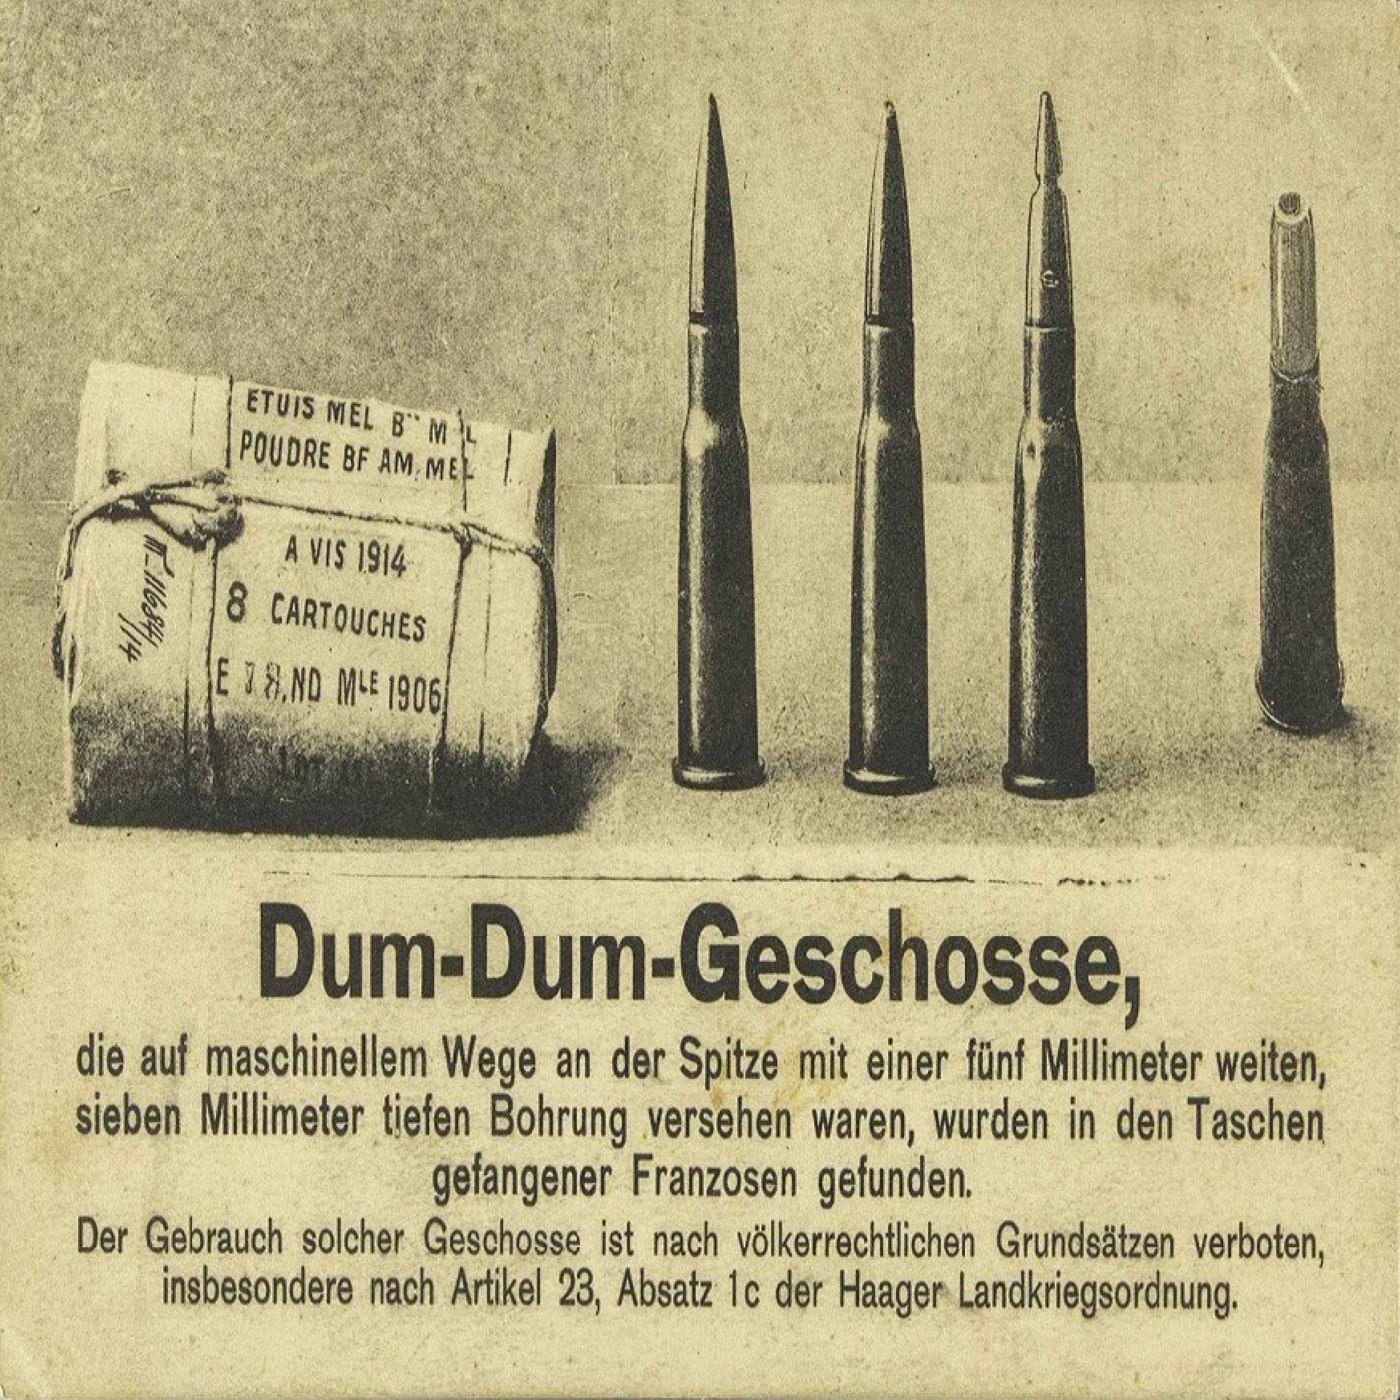 Y-055: Weltkriegspropaganda auf einer Postkarte der Druckerei Schaar & Dathe (1914)